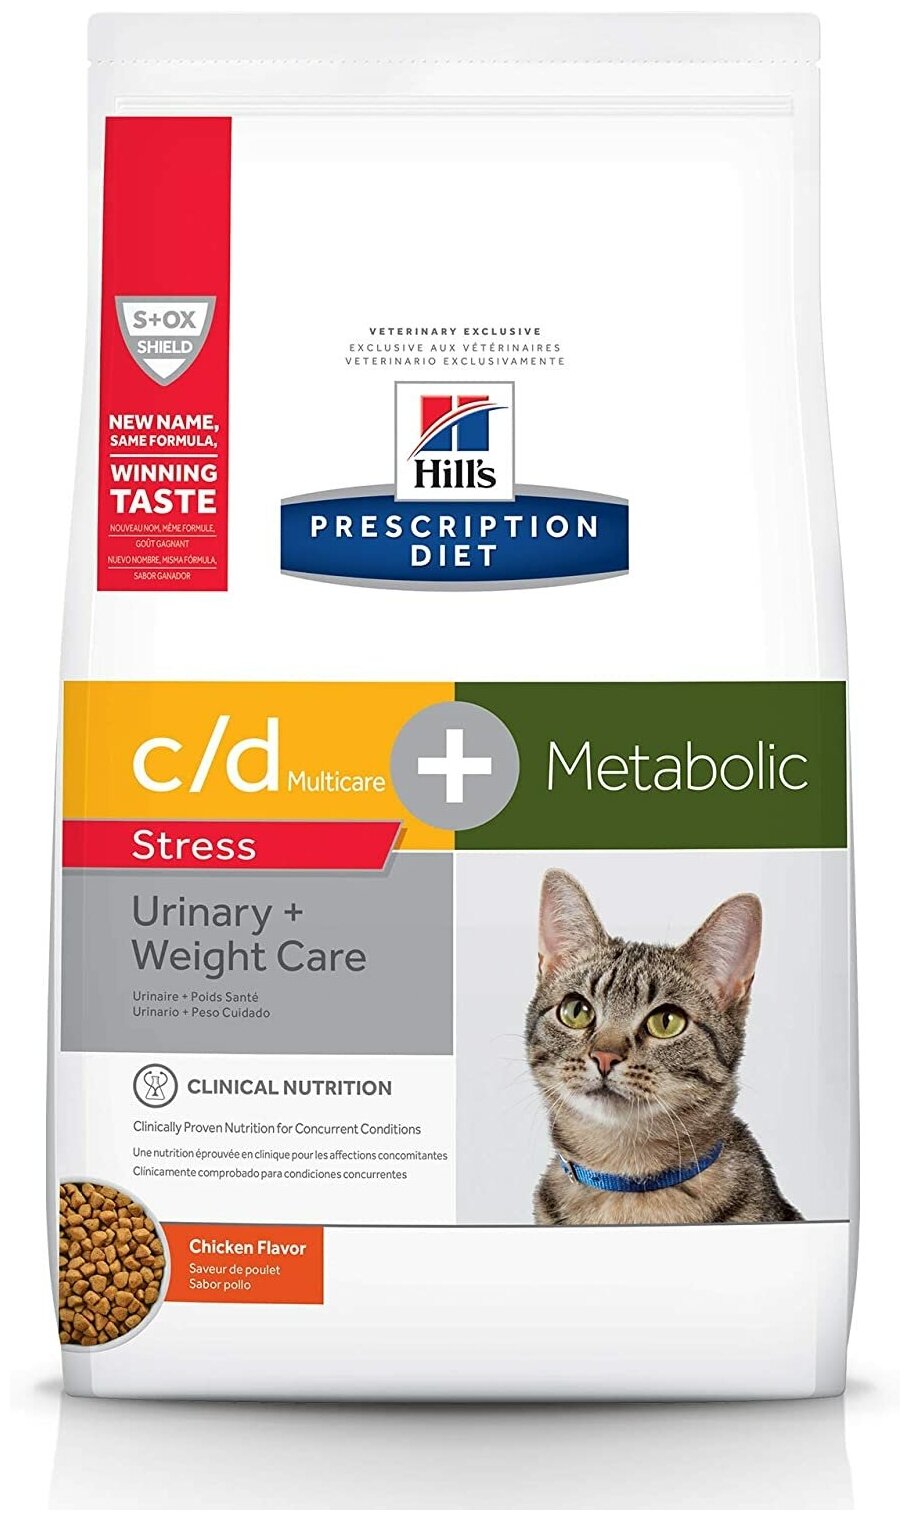 Сухой диетический корм для кошек Hill's c/d Multicare Stress + Metabolic при профилактике цистита, при стрессе и для снижения веса, с курицей, 1,5кг годен по 06.2024г.